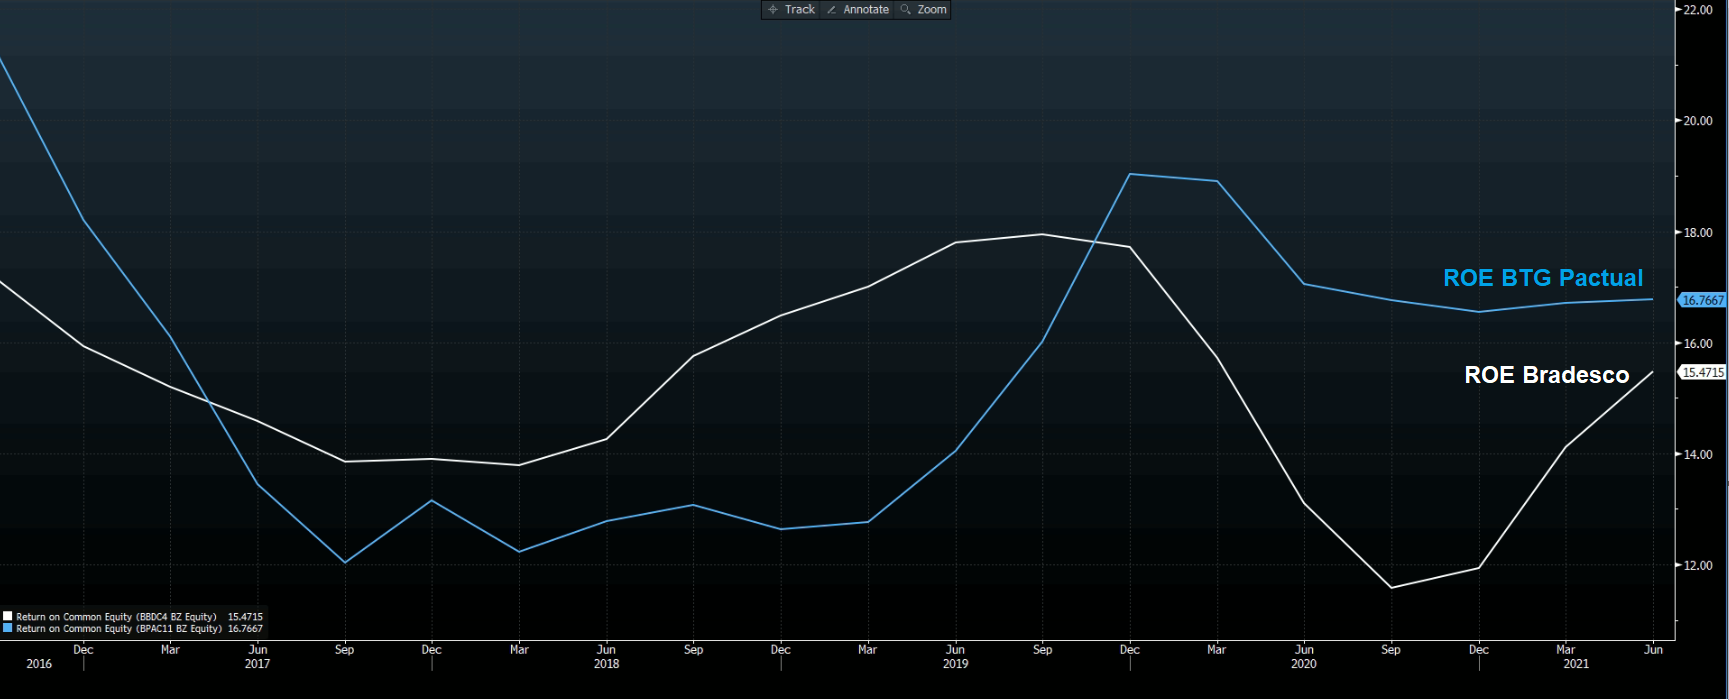 Histórico de rentabilidade BTG (azul) e Bradesco (branco)